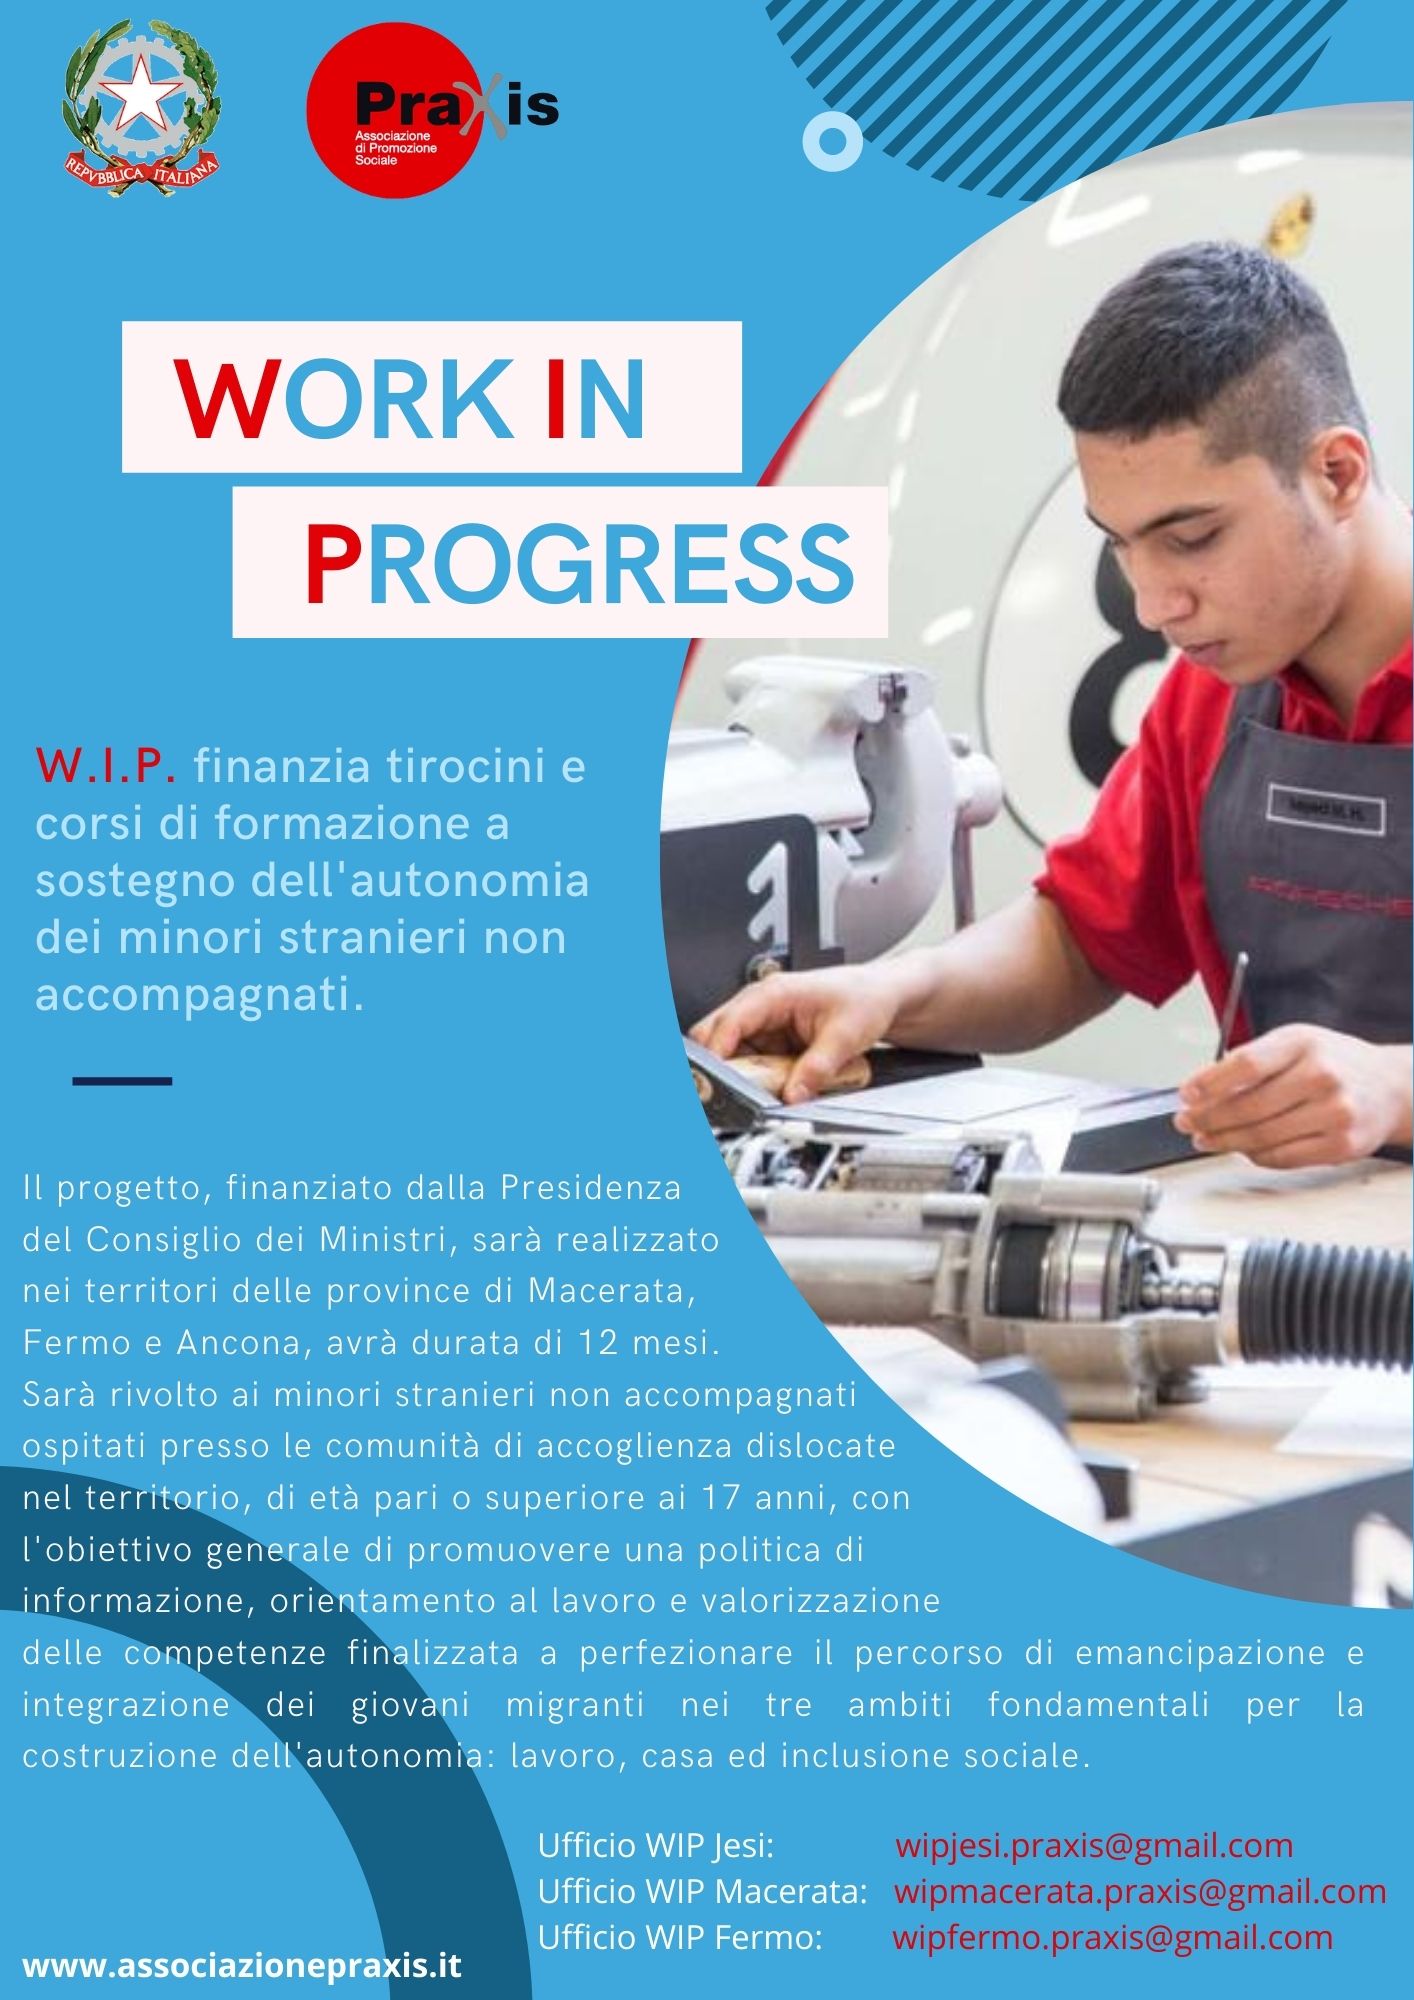 WIP Work In Progress. Tirocini e corsi di formazione per minori stranieri non accompagnati